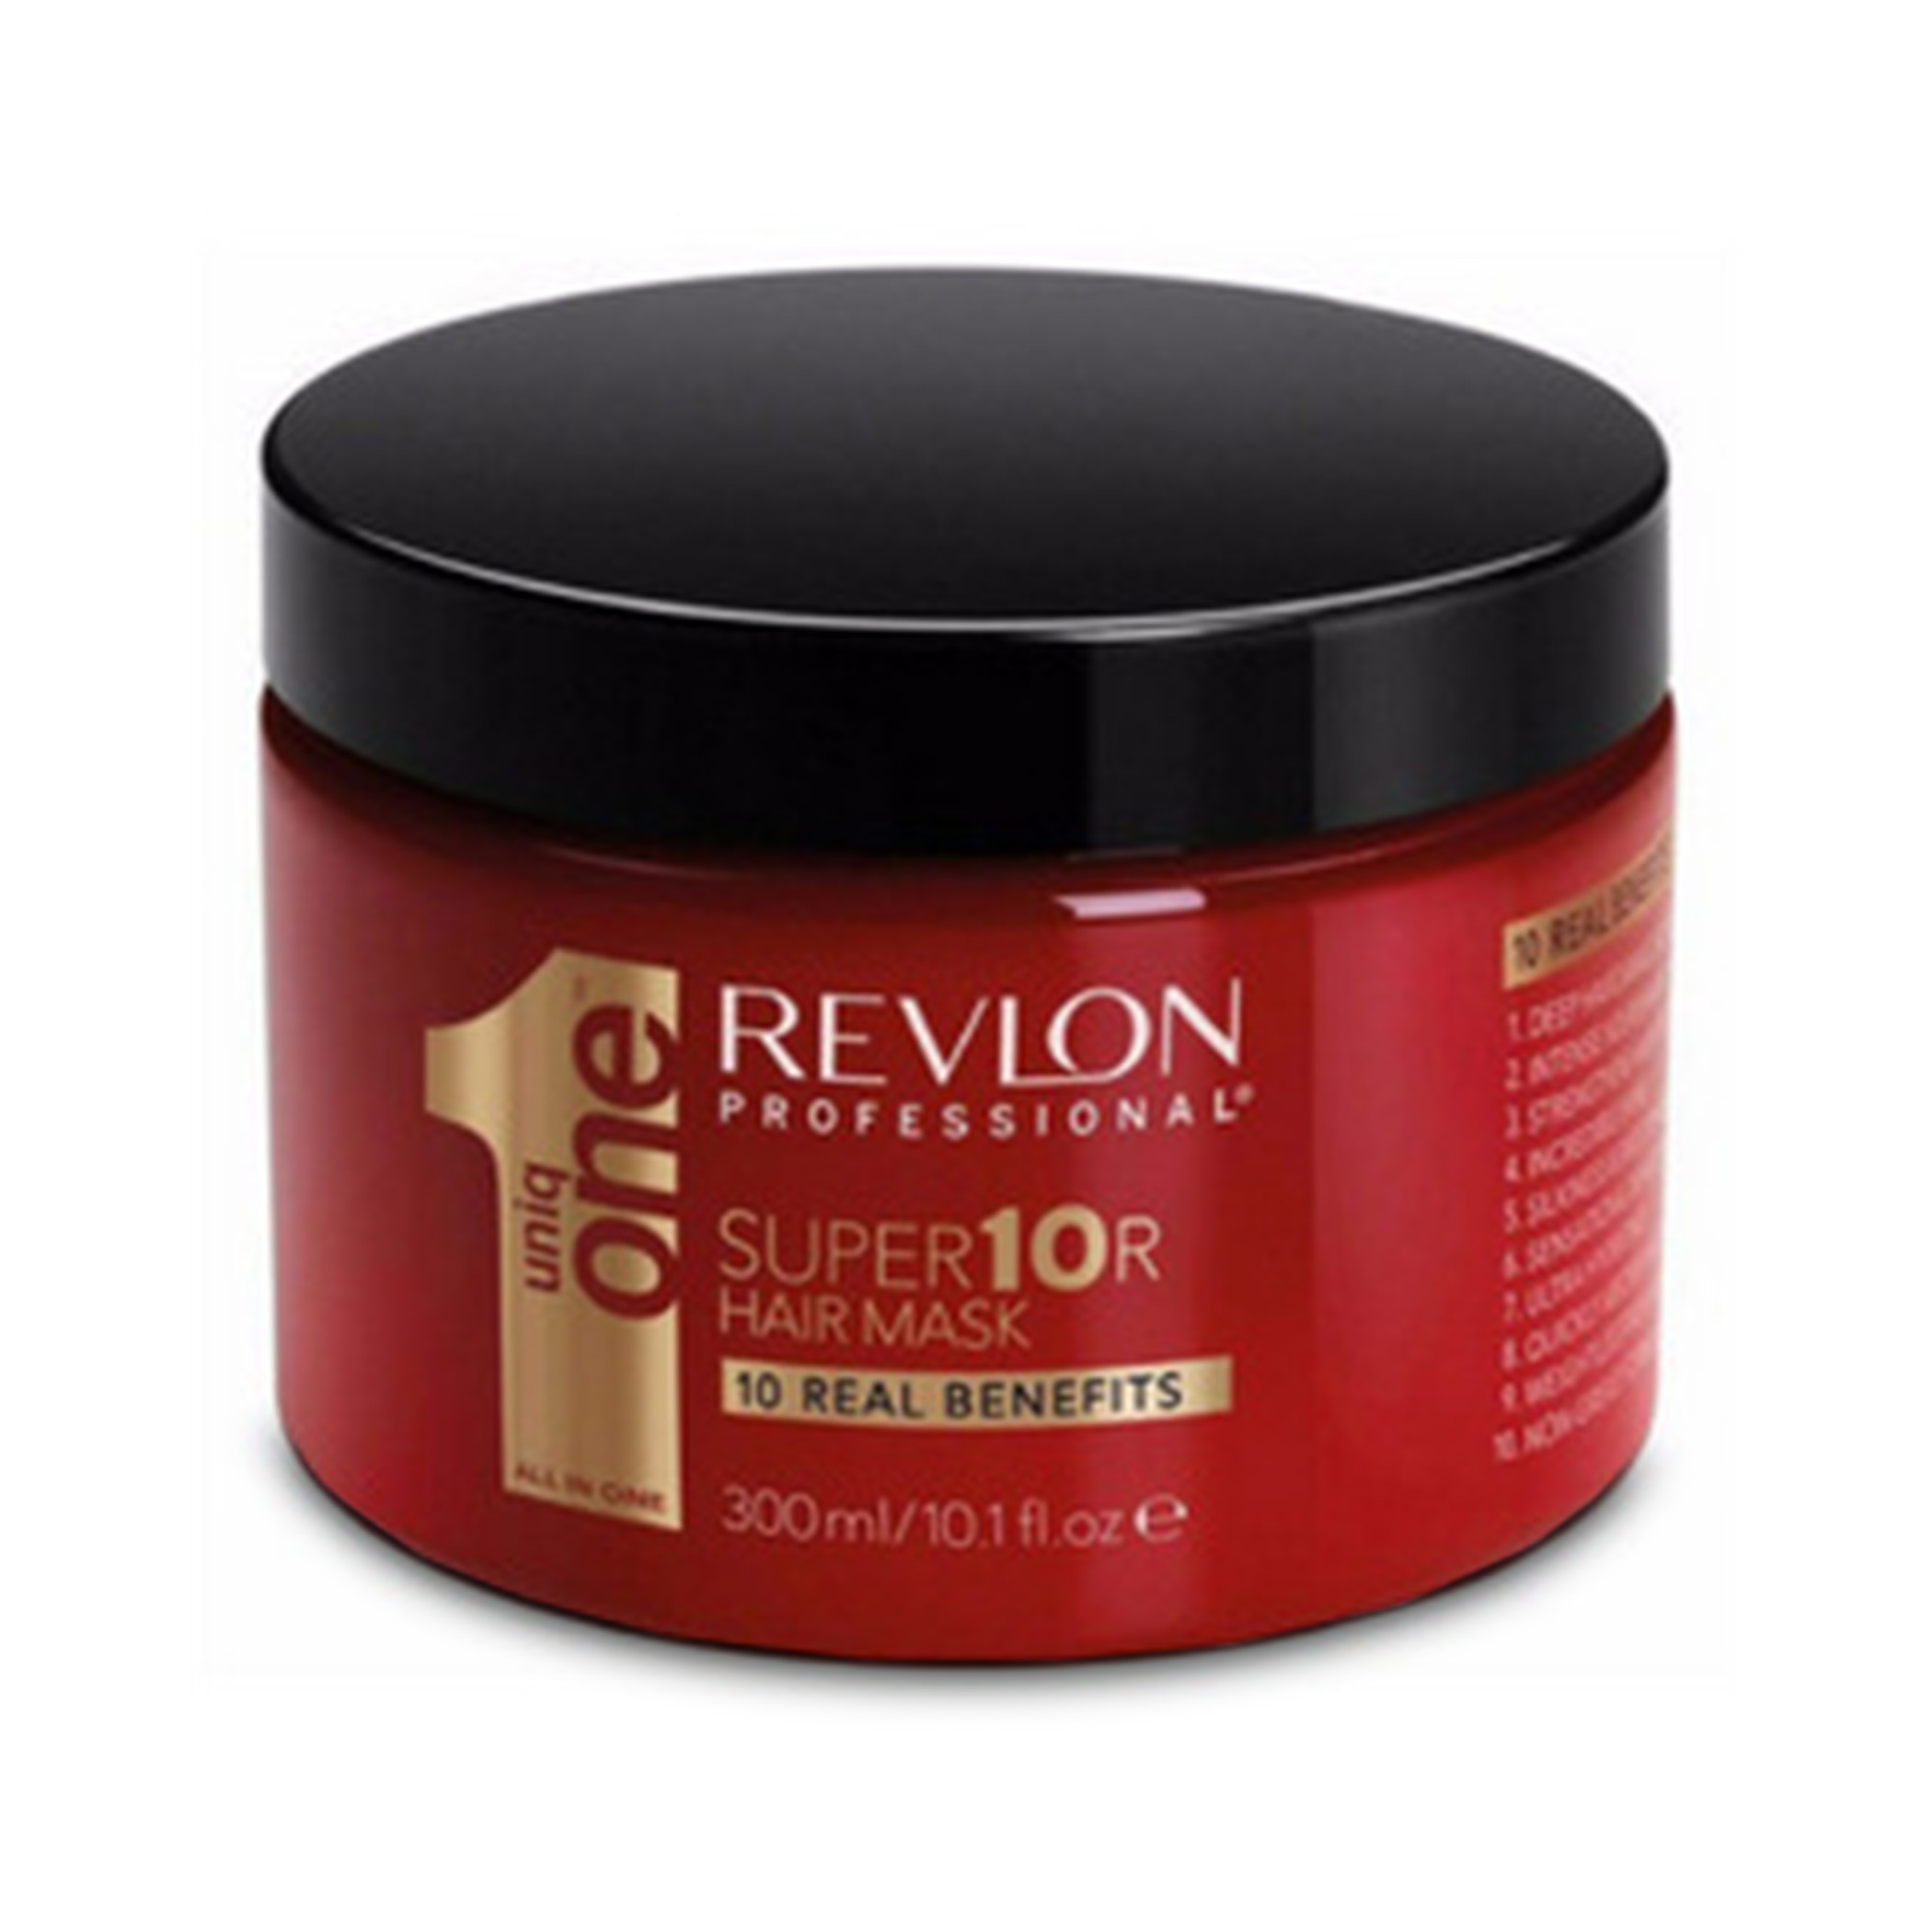 Маска для волос италия. Маска для волос Revlon professional. Revlon 1 маска для волос. Revlon professional Uniq one Супермаска для волос super10r. Испанская маска для волос.